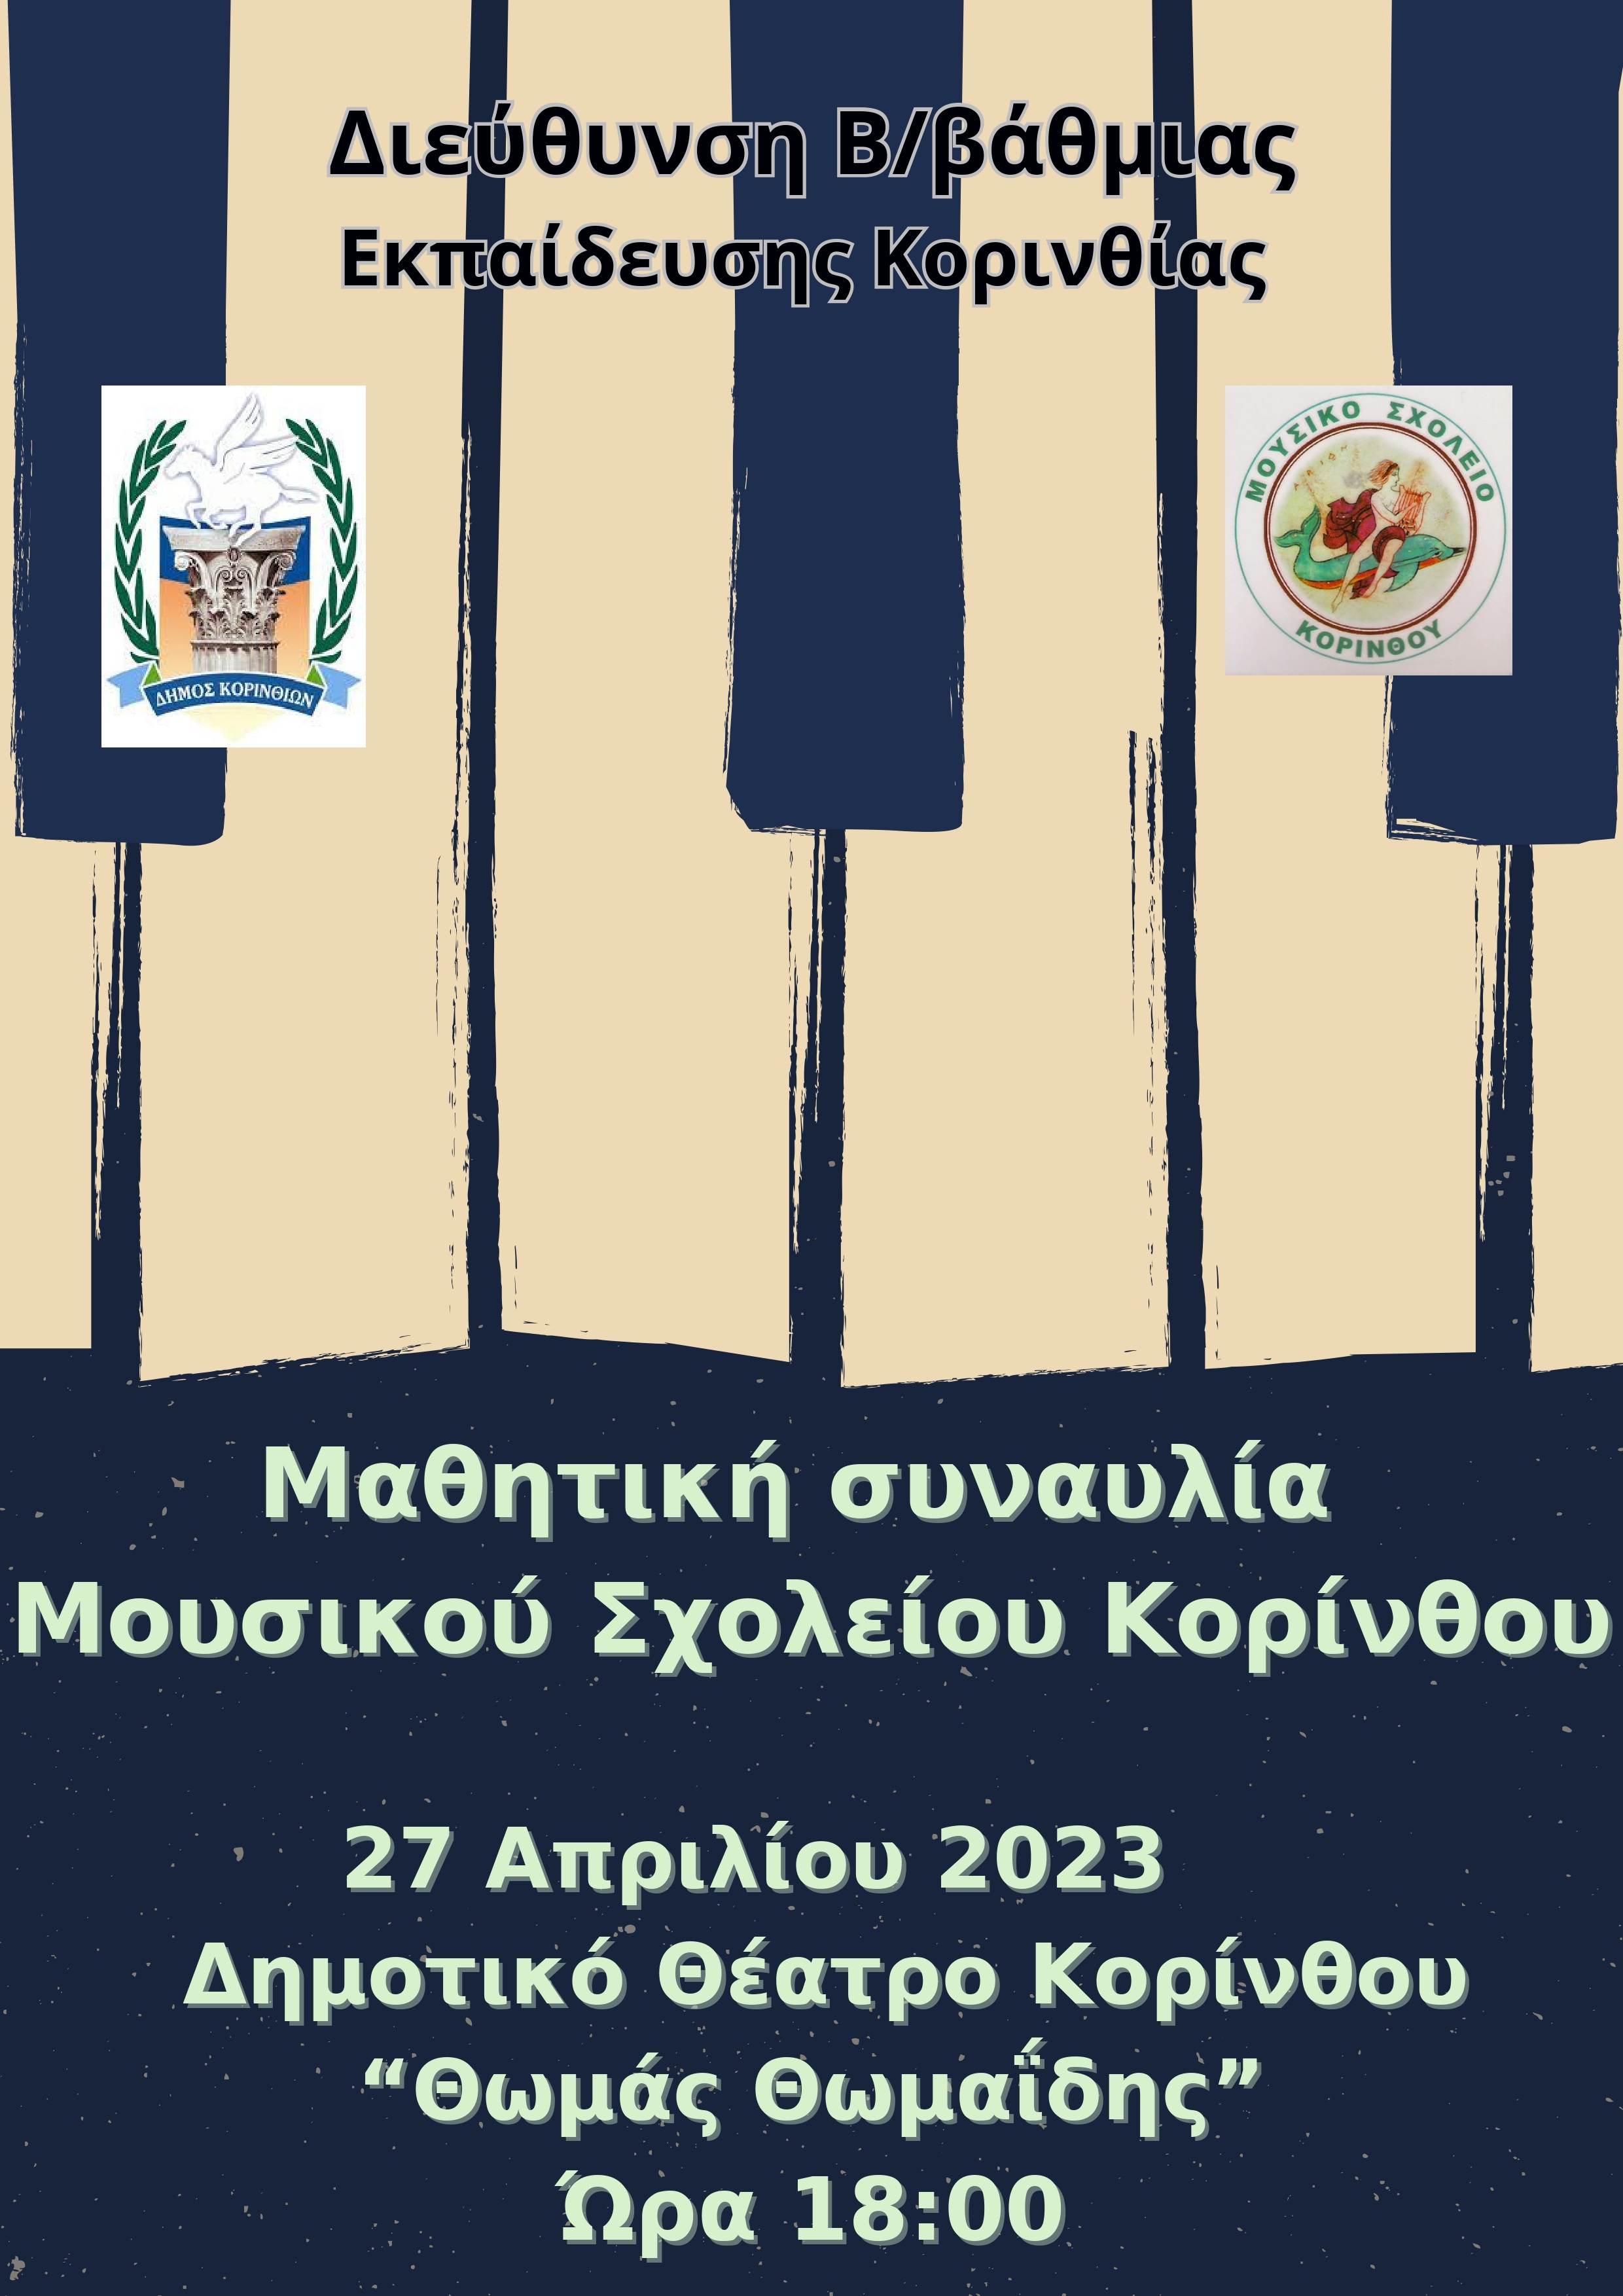 Μαθητική συναυλία Μουσικού Σχολείου Κορίνθου 27 Απριλίου 2023 Δημοτικό Θέατρο Κορίνθου Θωμάς Θωμαΐδης Ώρα 1800 page 0001